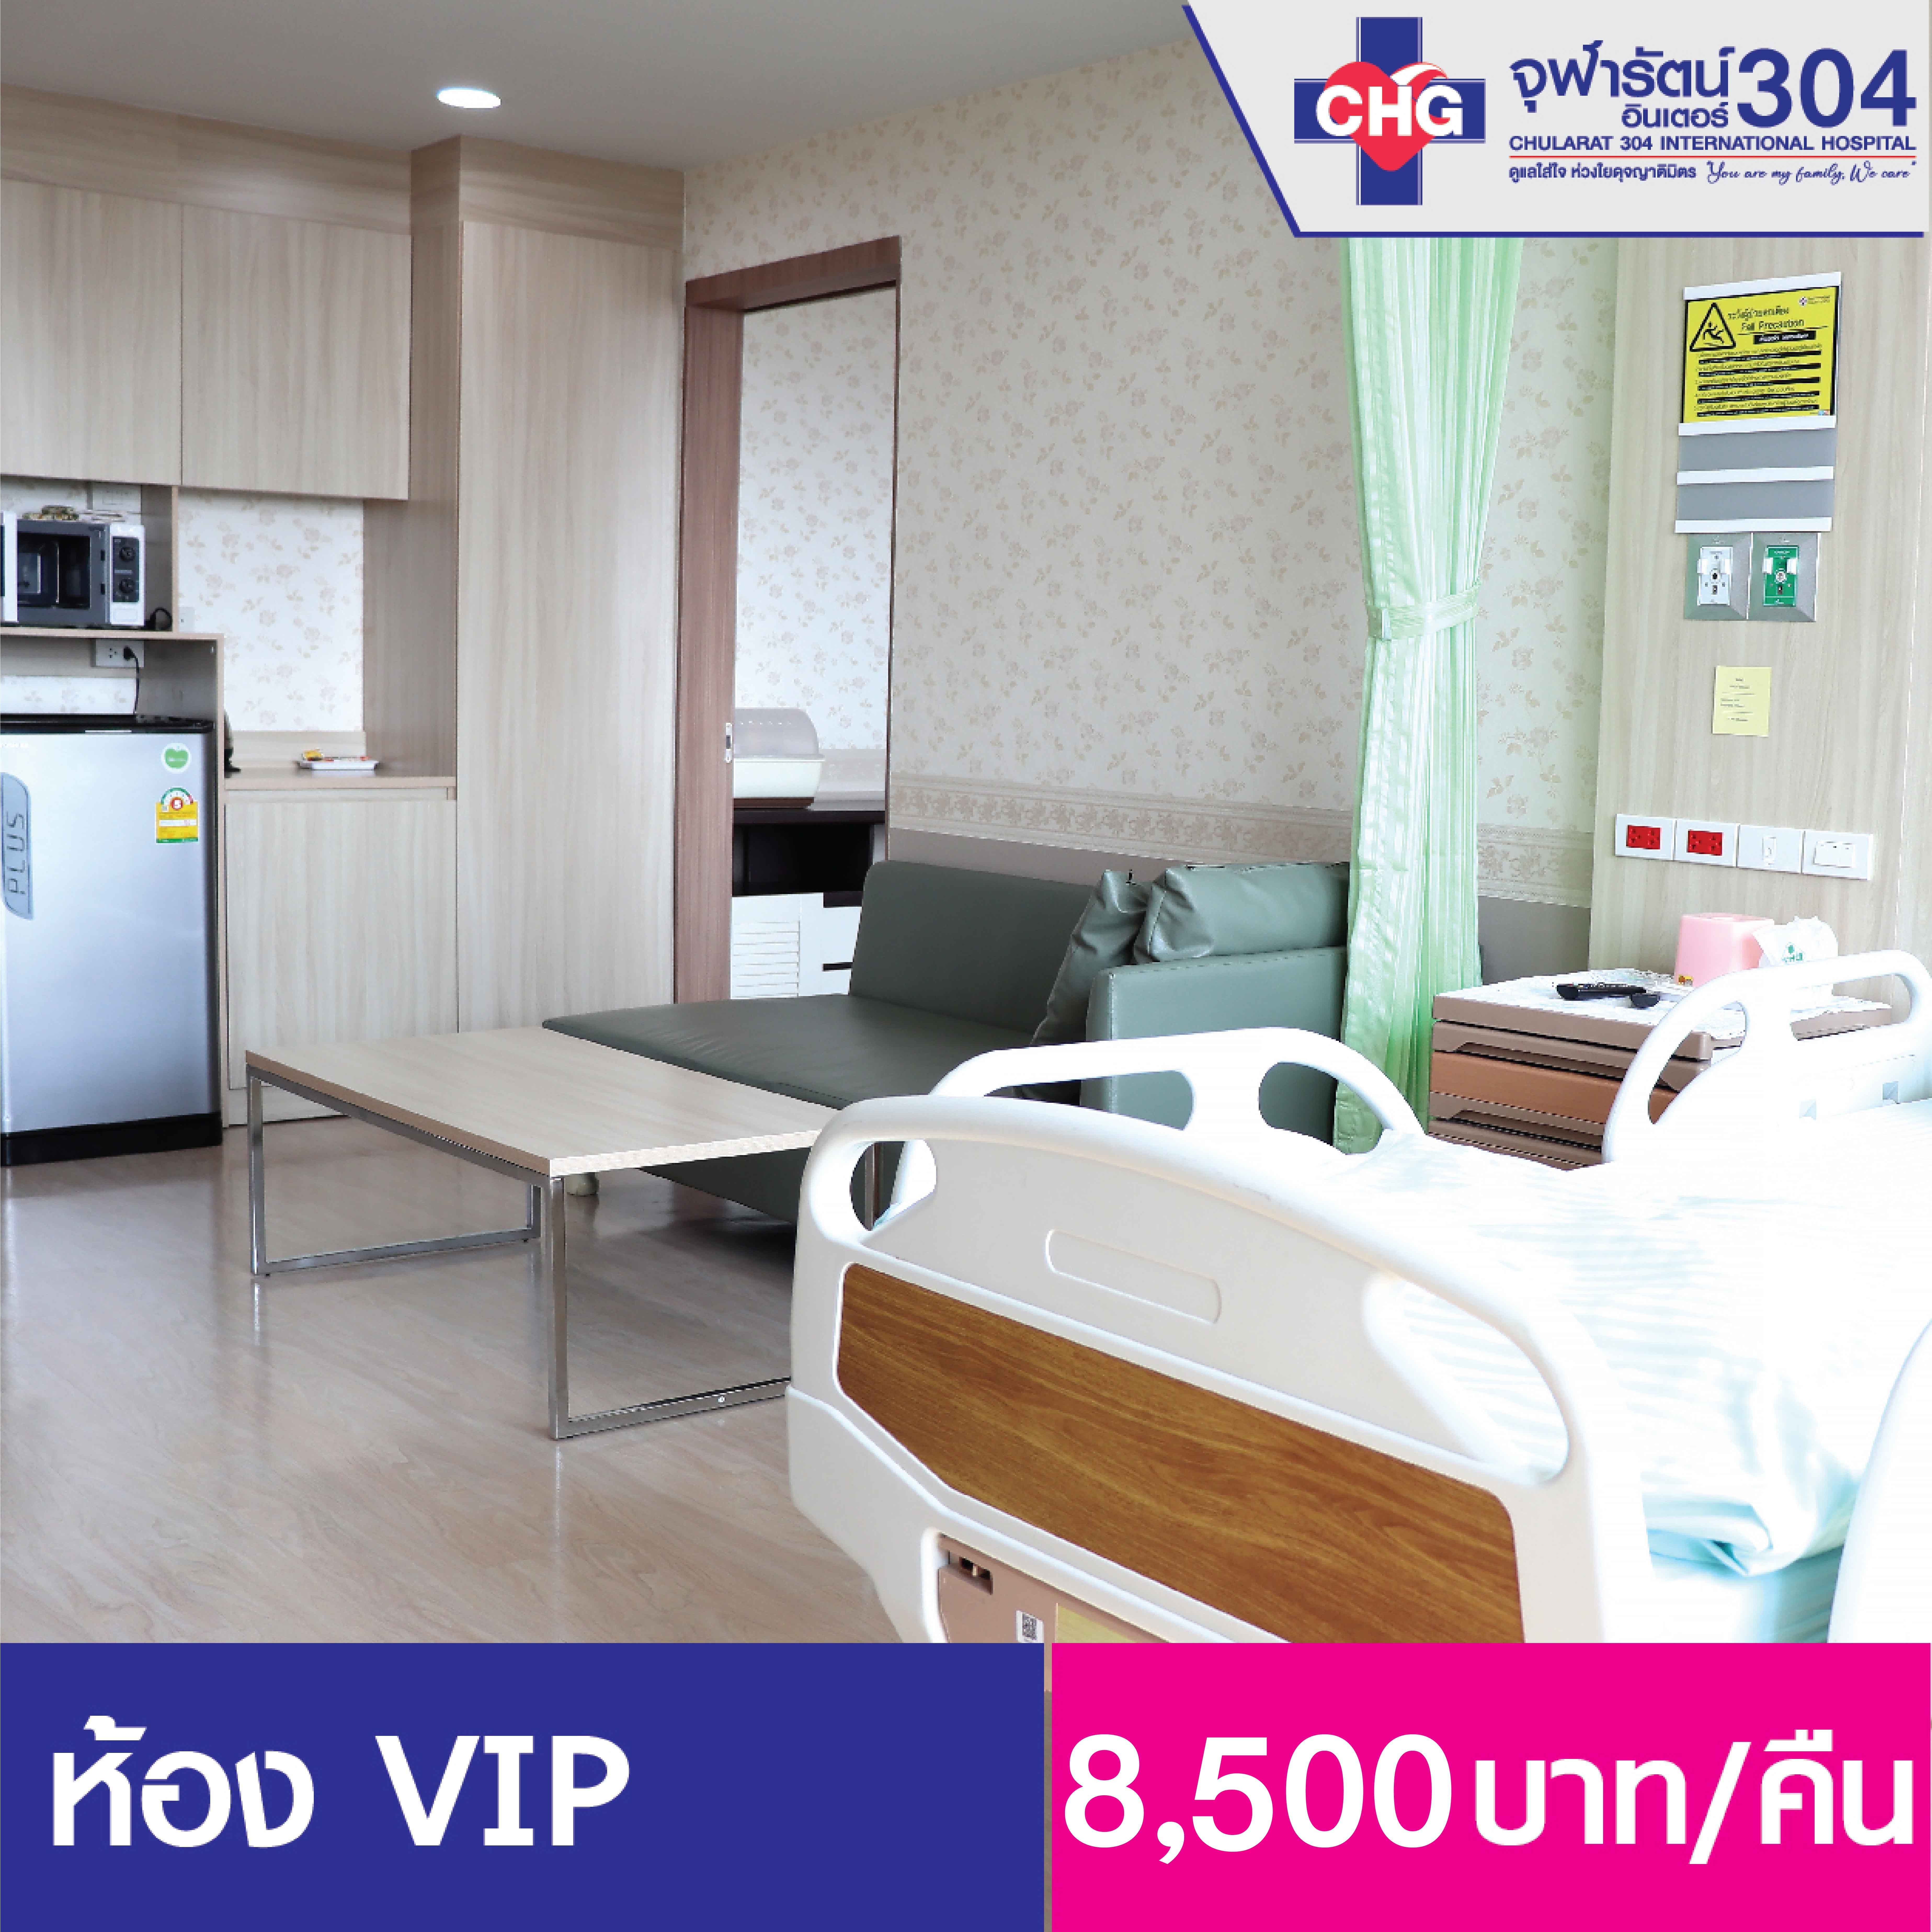 ห้องพักผู้ป่วยใน Suite VIP - ห้องพักผู้ป่วยใน - โรงพยาบาลจุฬารัตน์ 304 อินเตอร์